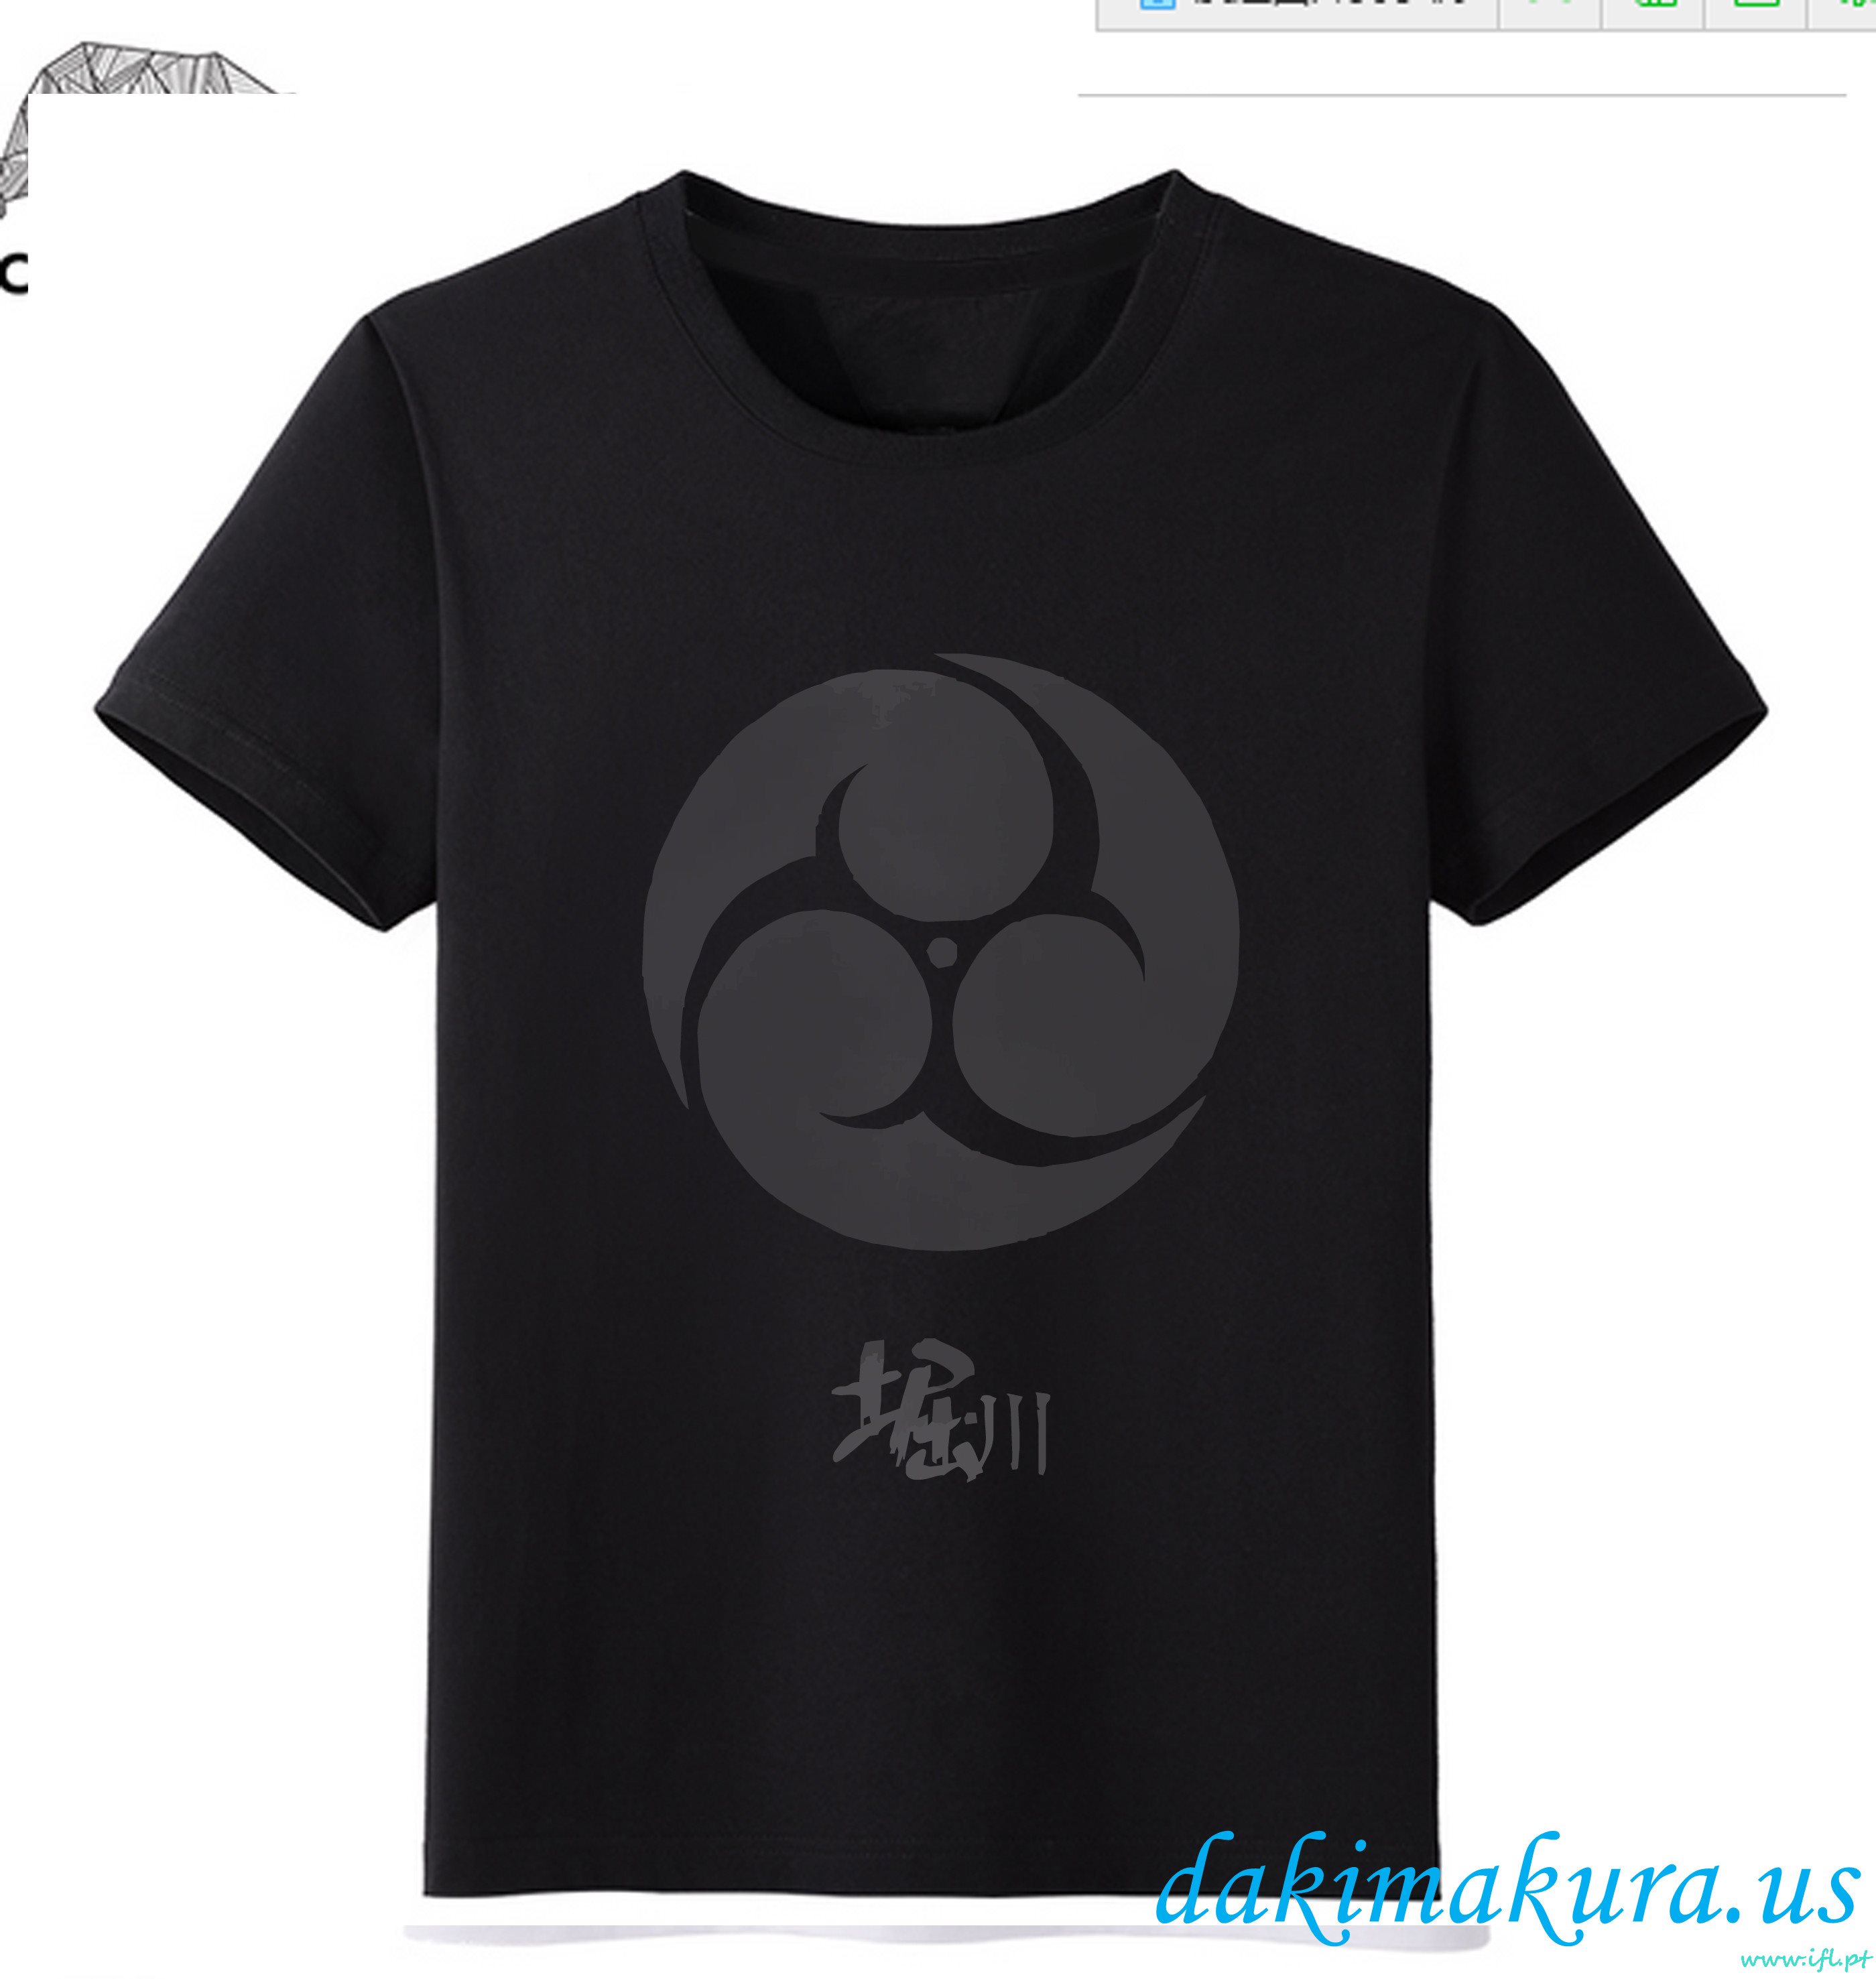 евтини Black - Touken Ranbu онлайн мъже аниме модни тениски от Китай фабрика